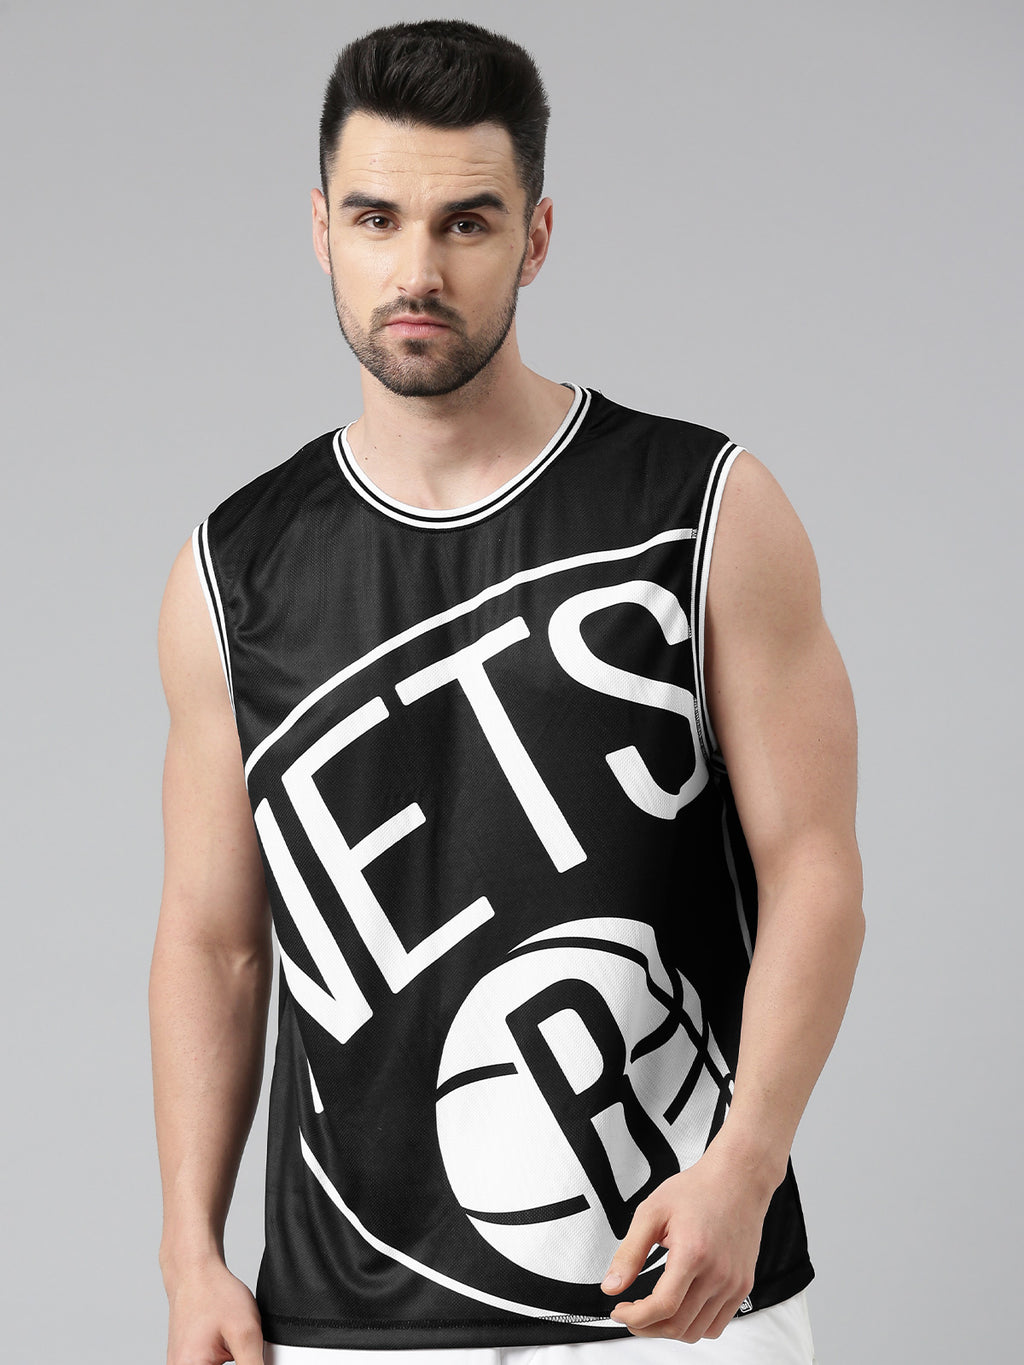 White Brooklyn Nets Basketball Jersey